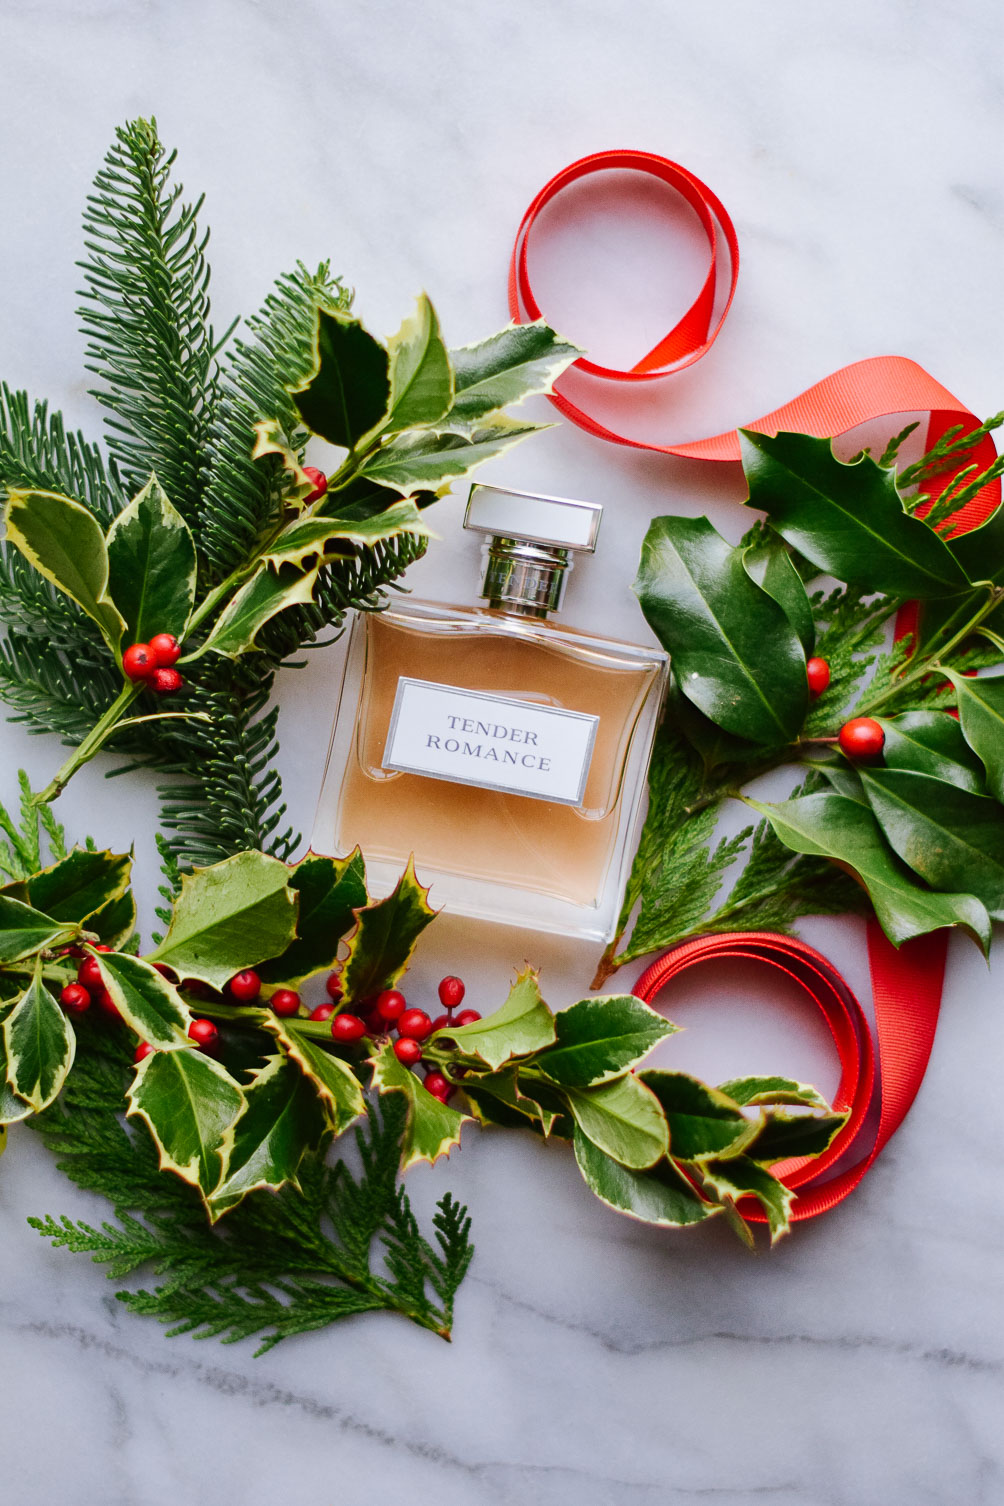 choosing a winter fragrance with Ralph Lauren Tender Romance